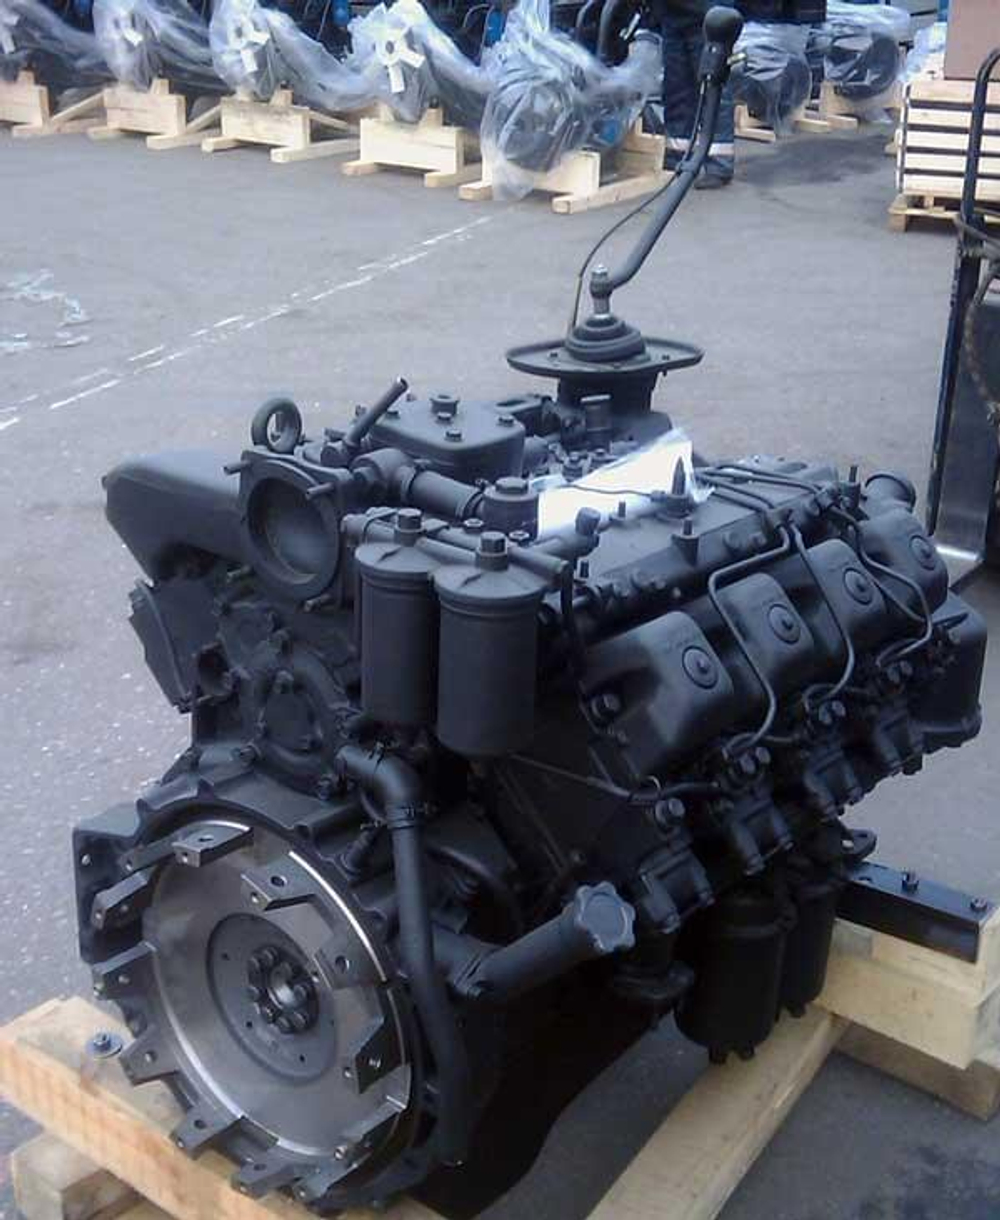 Двигатель 740.10 для КамАЗ-4310 /Ремдизель/ 210 л.с.